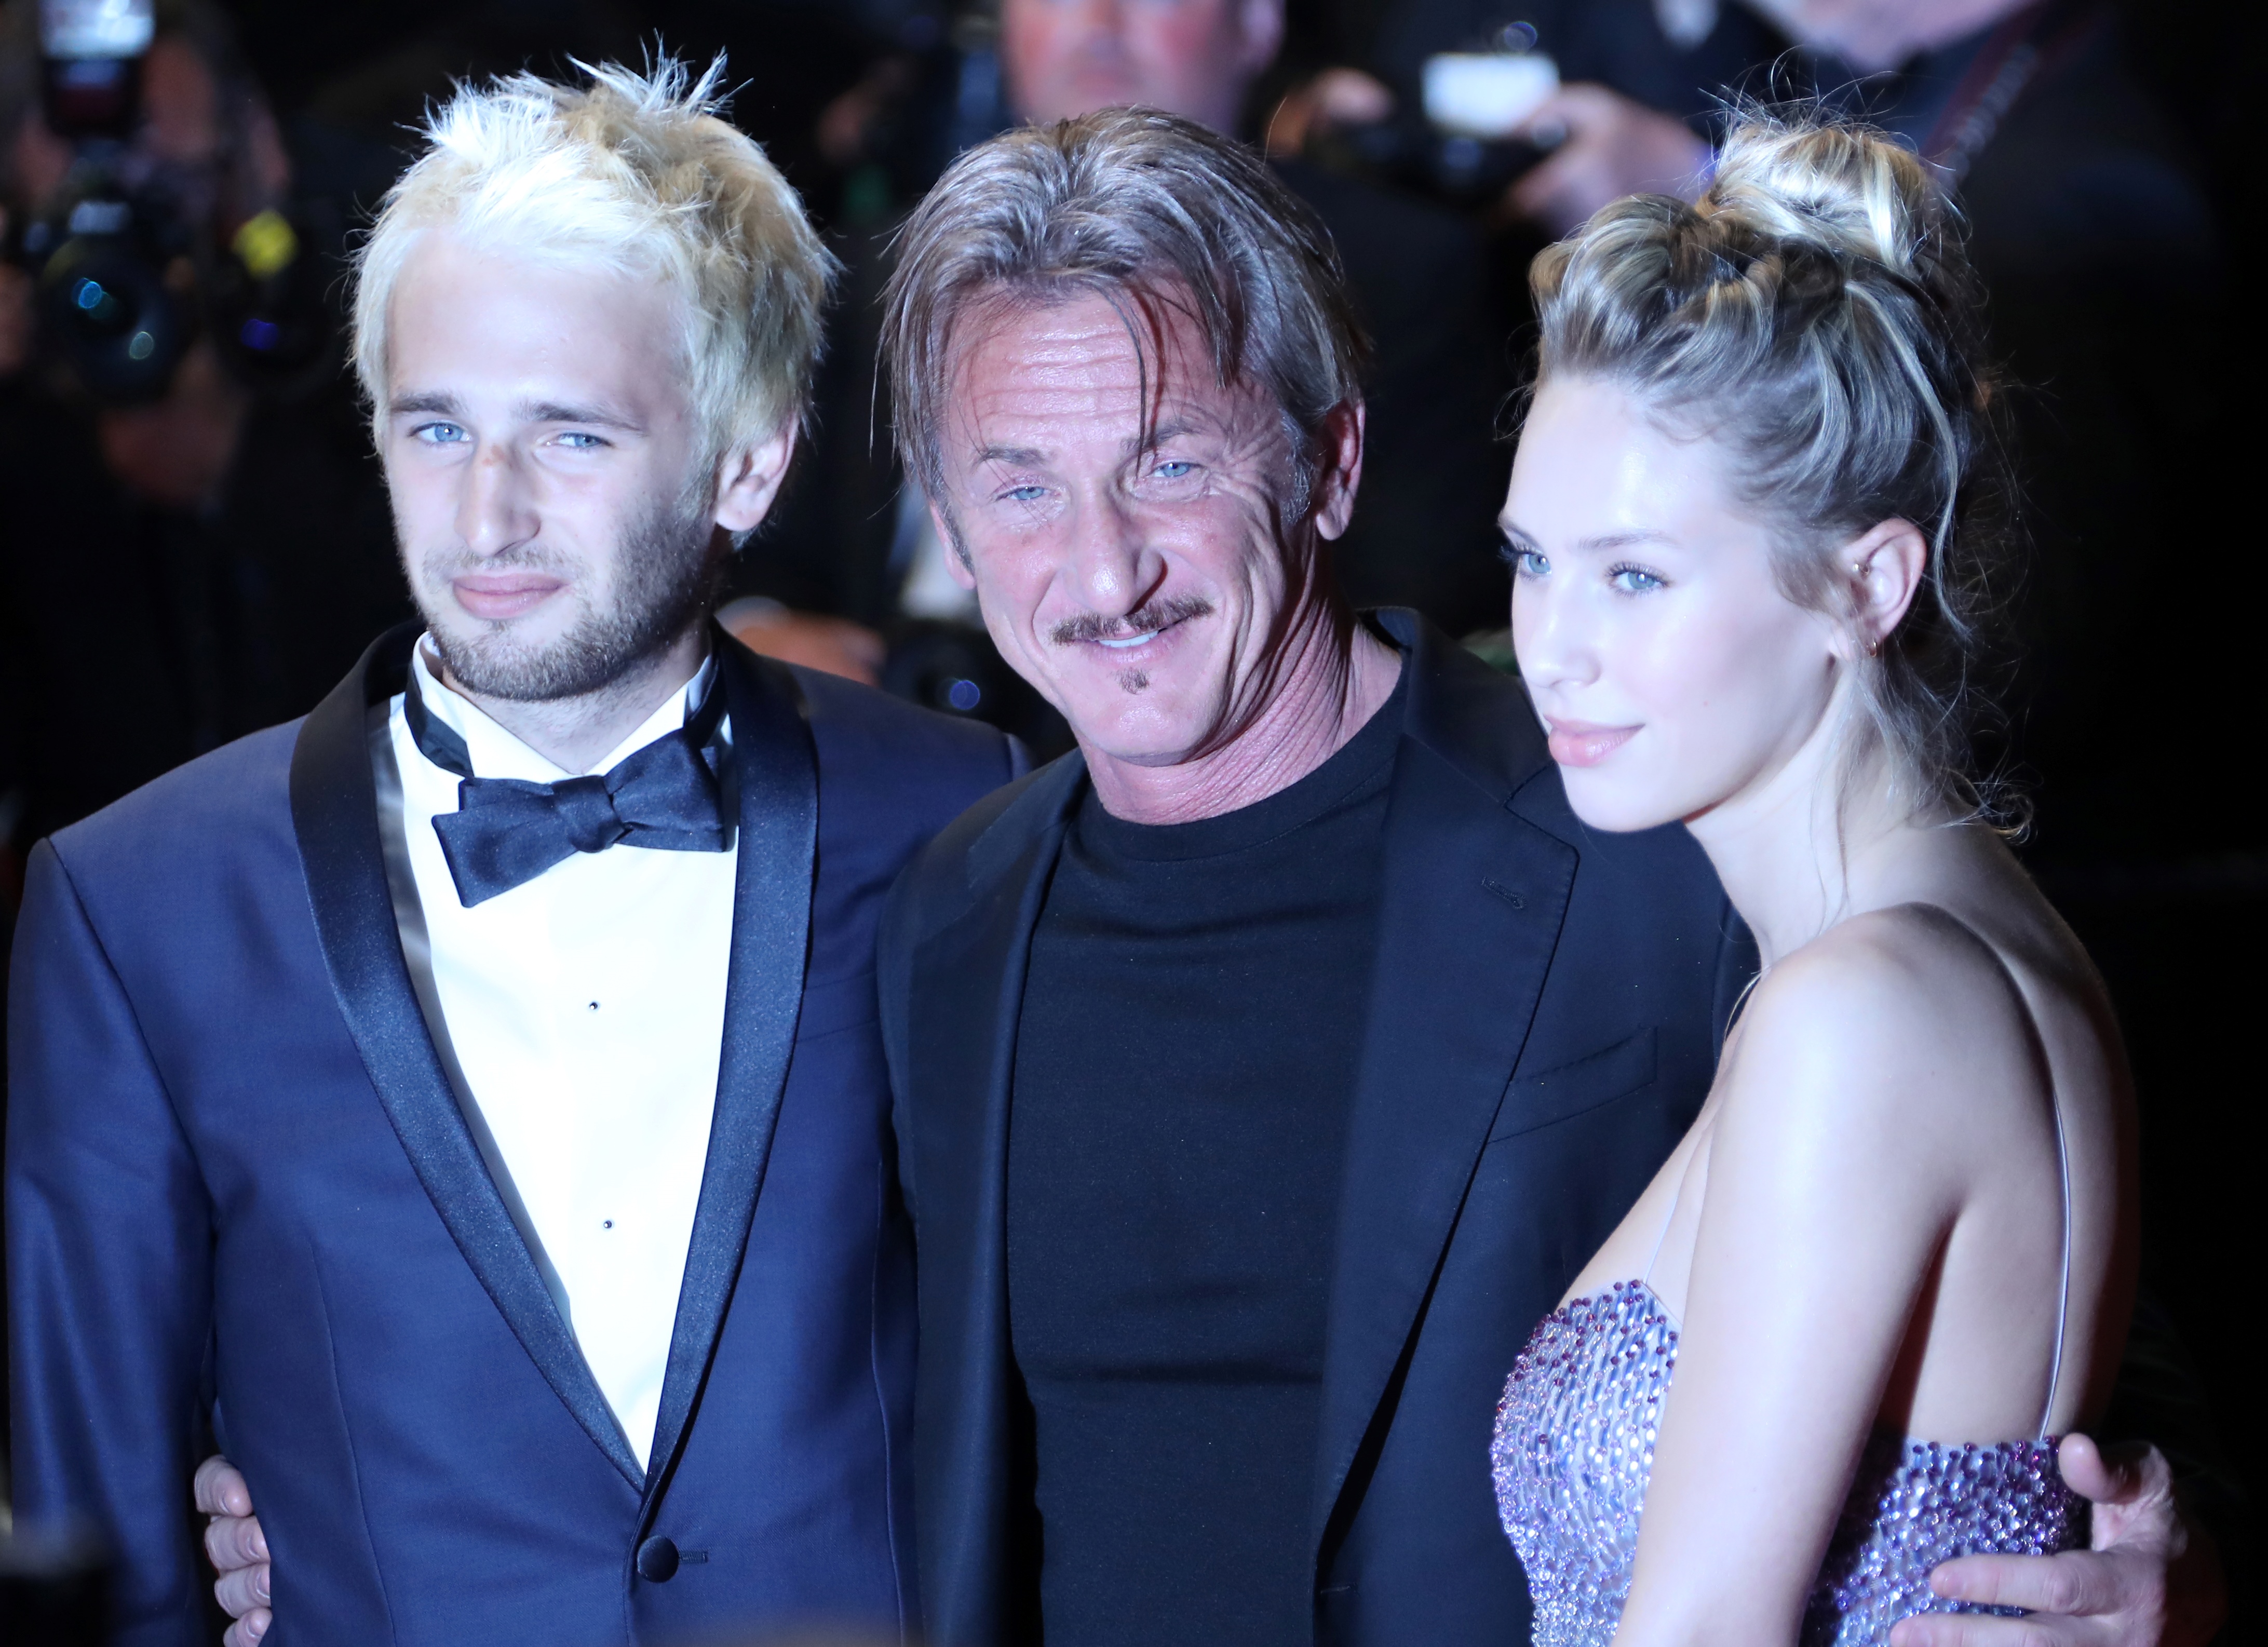 El actor posó en el festival de Cannes con sus dos hijos.